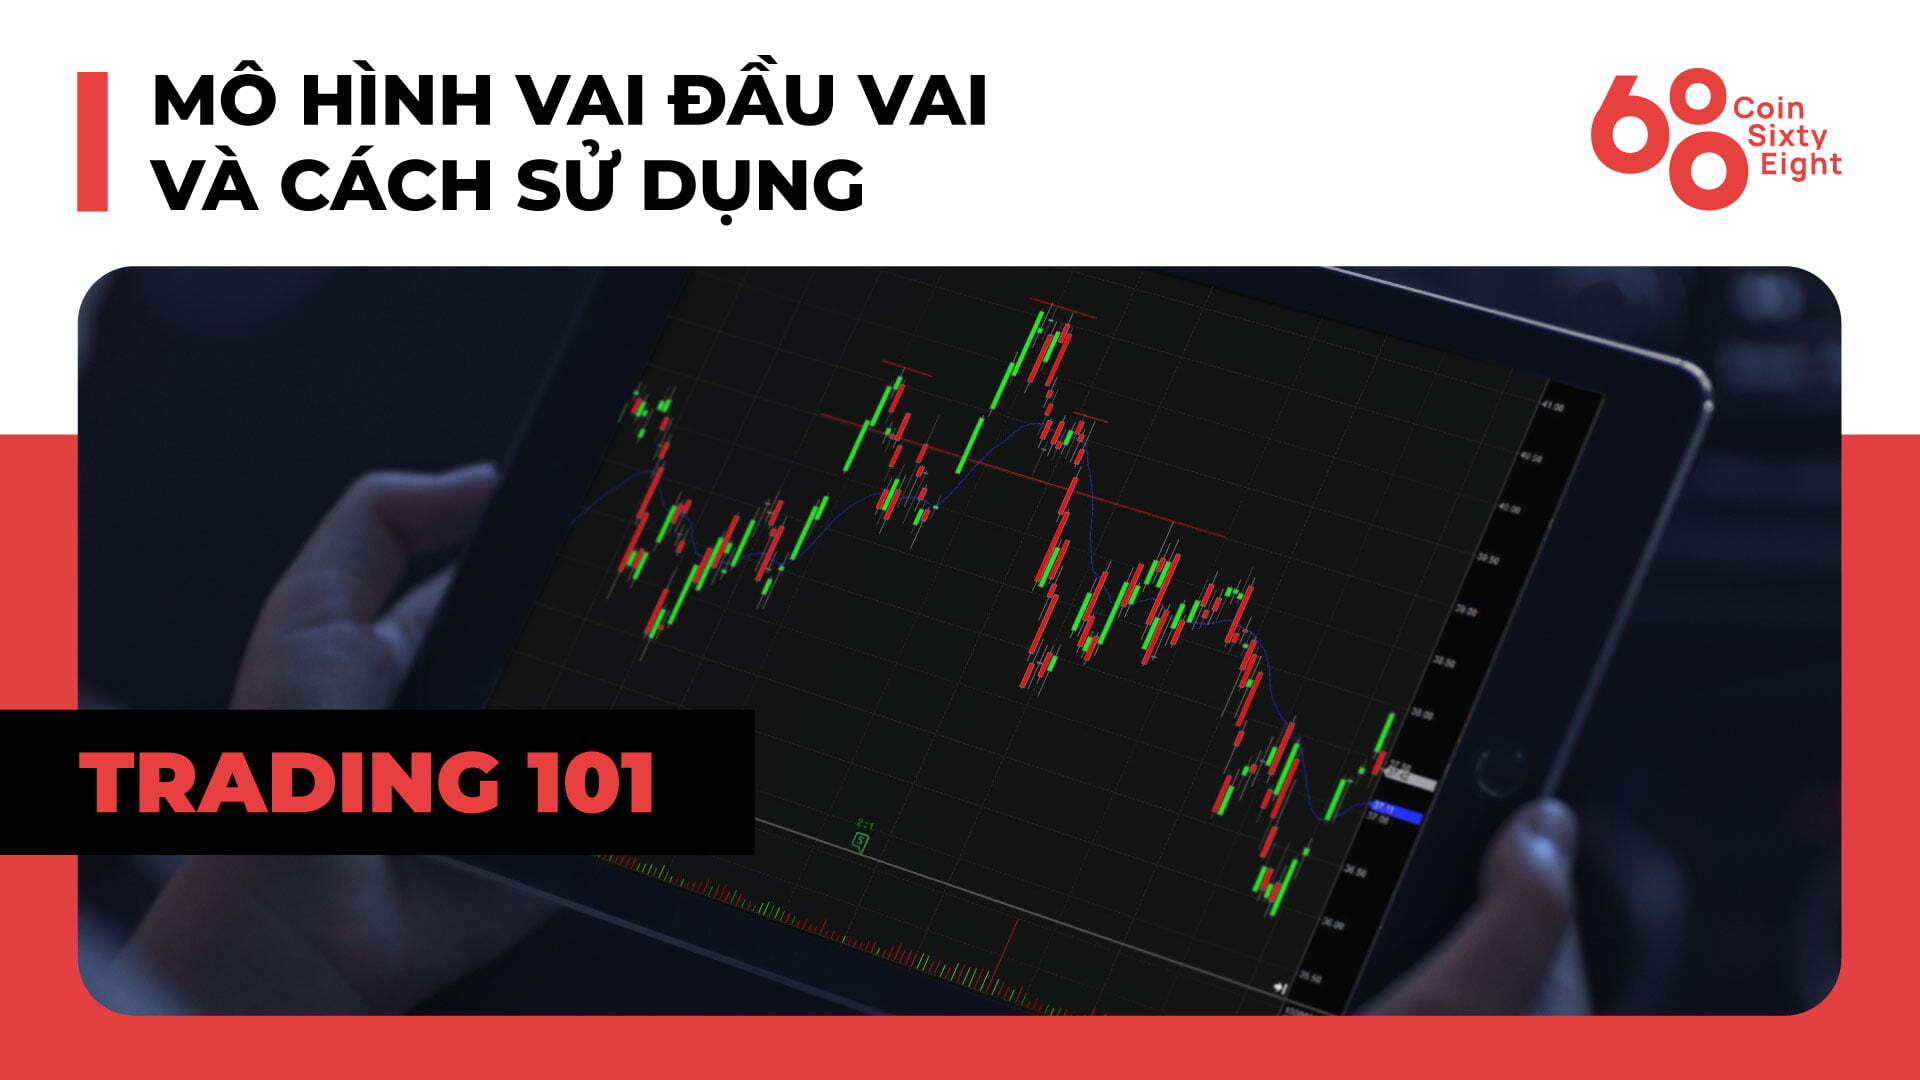 Lớp giao dịch 101: Price Action Trading (Phần 8) – Mô hình vai đầu vai và  cách sử dụng